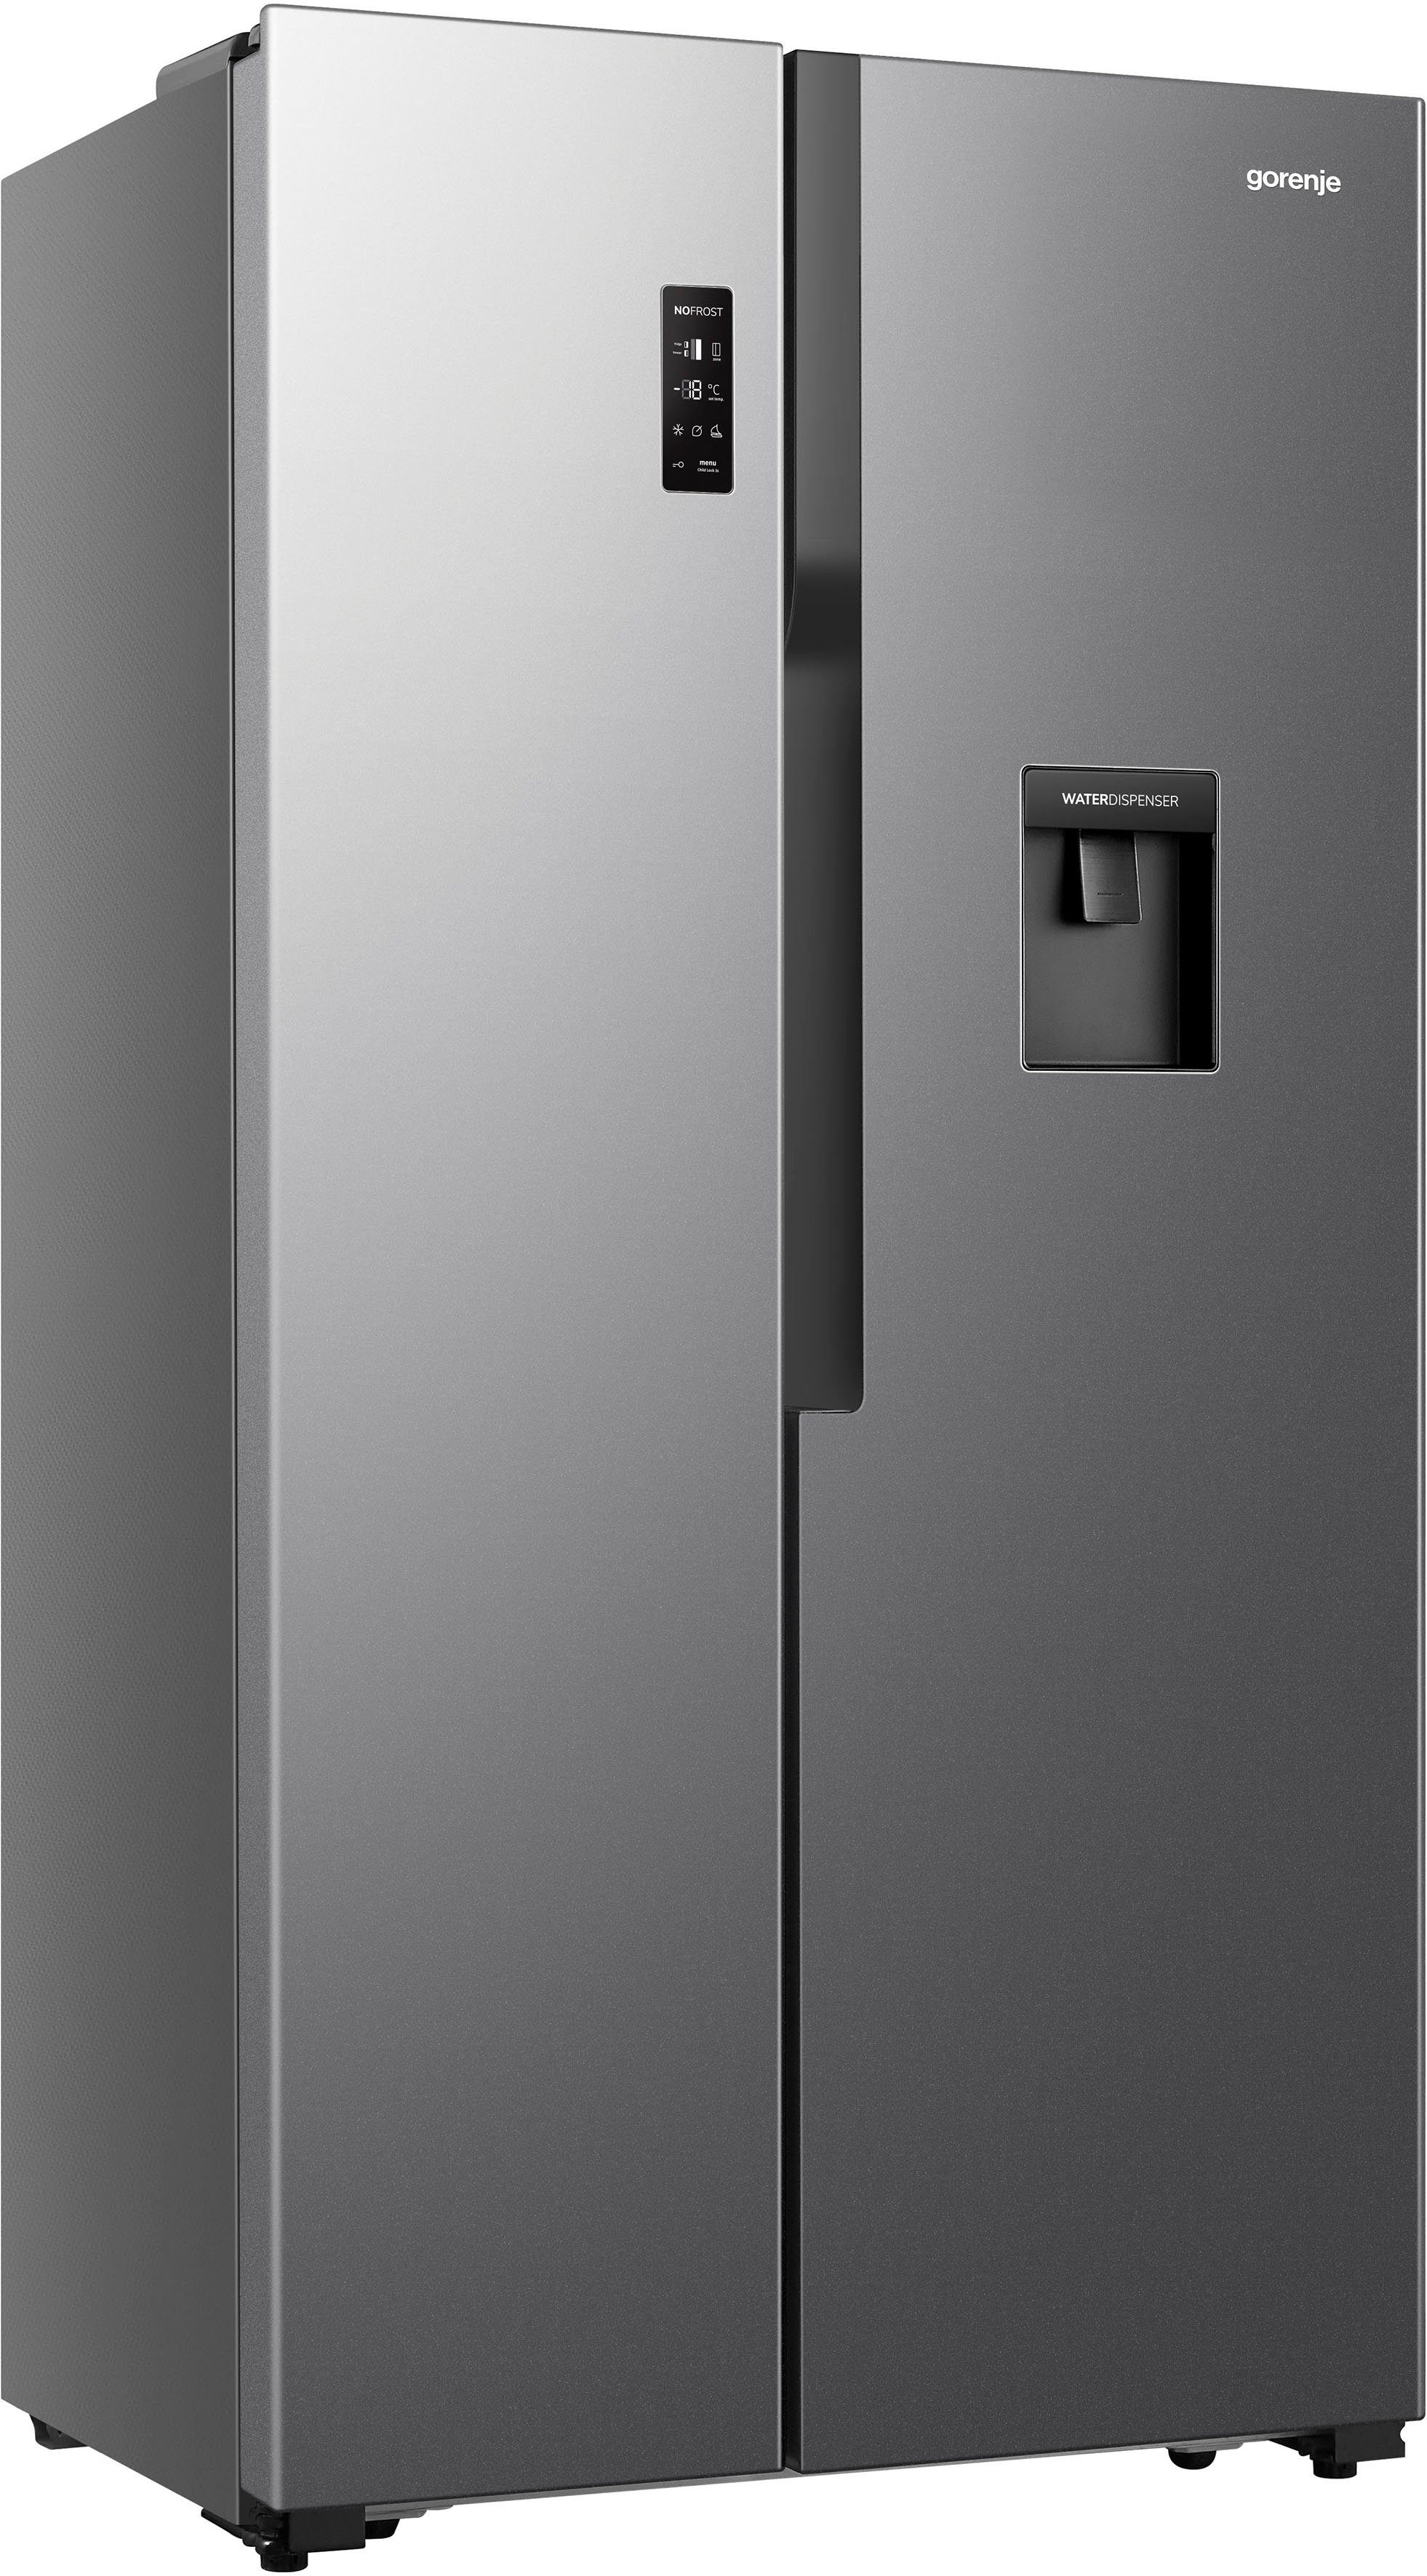 GORENJE Side-by-Side NS9DXLWD, 178,6 cm hoch, 91,0 cm breit | Side-by-Side Kühlschränke